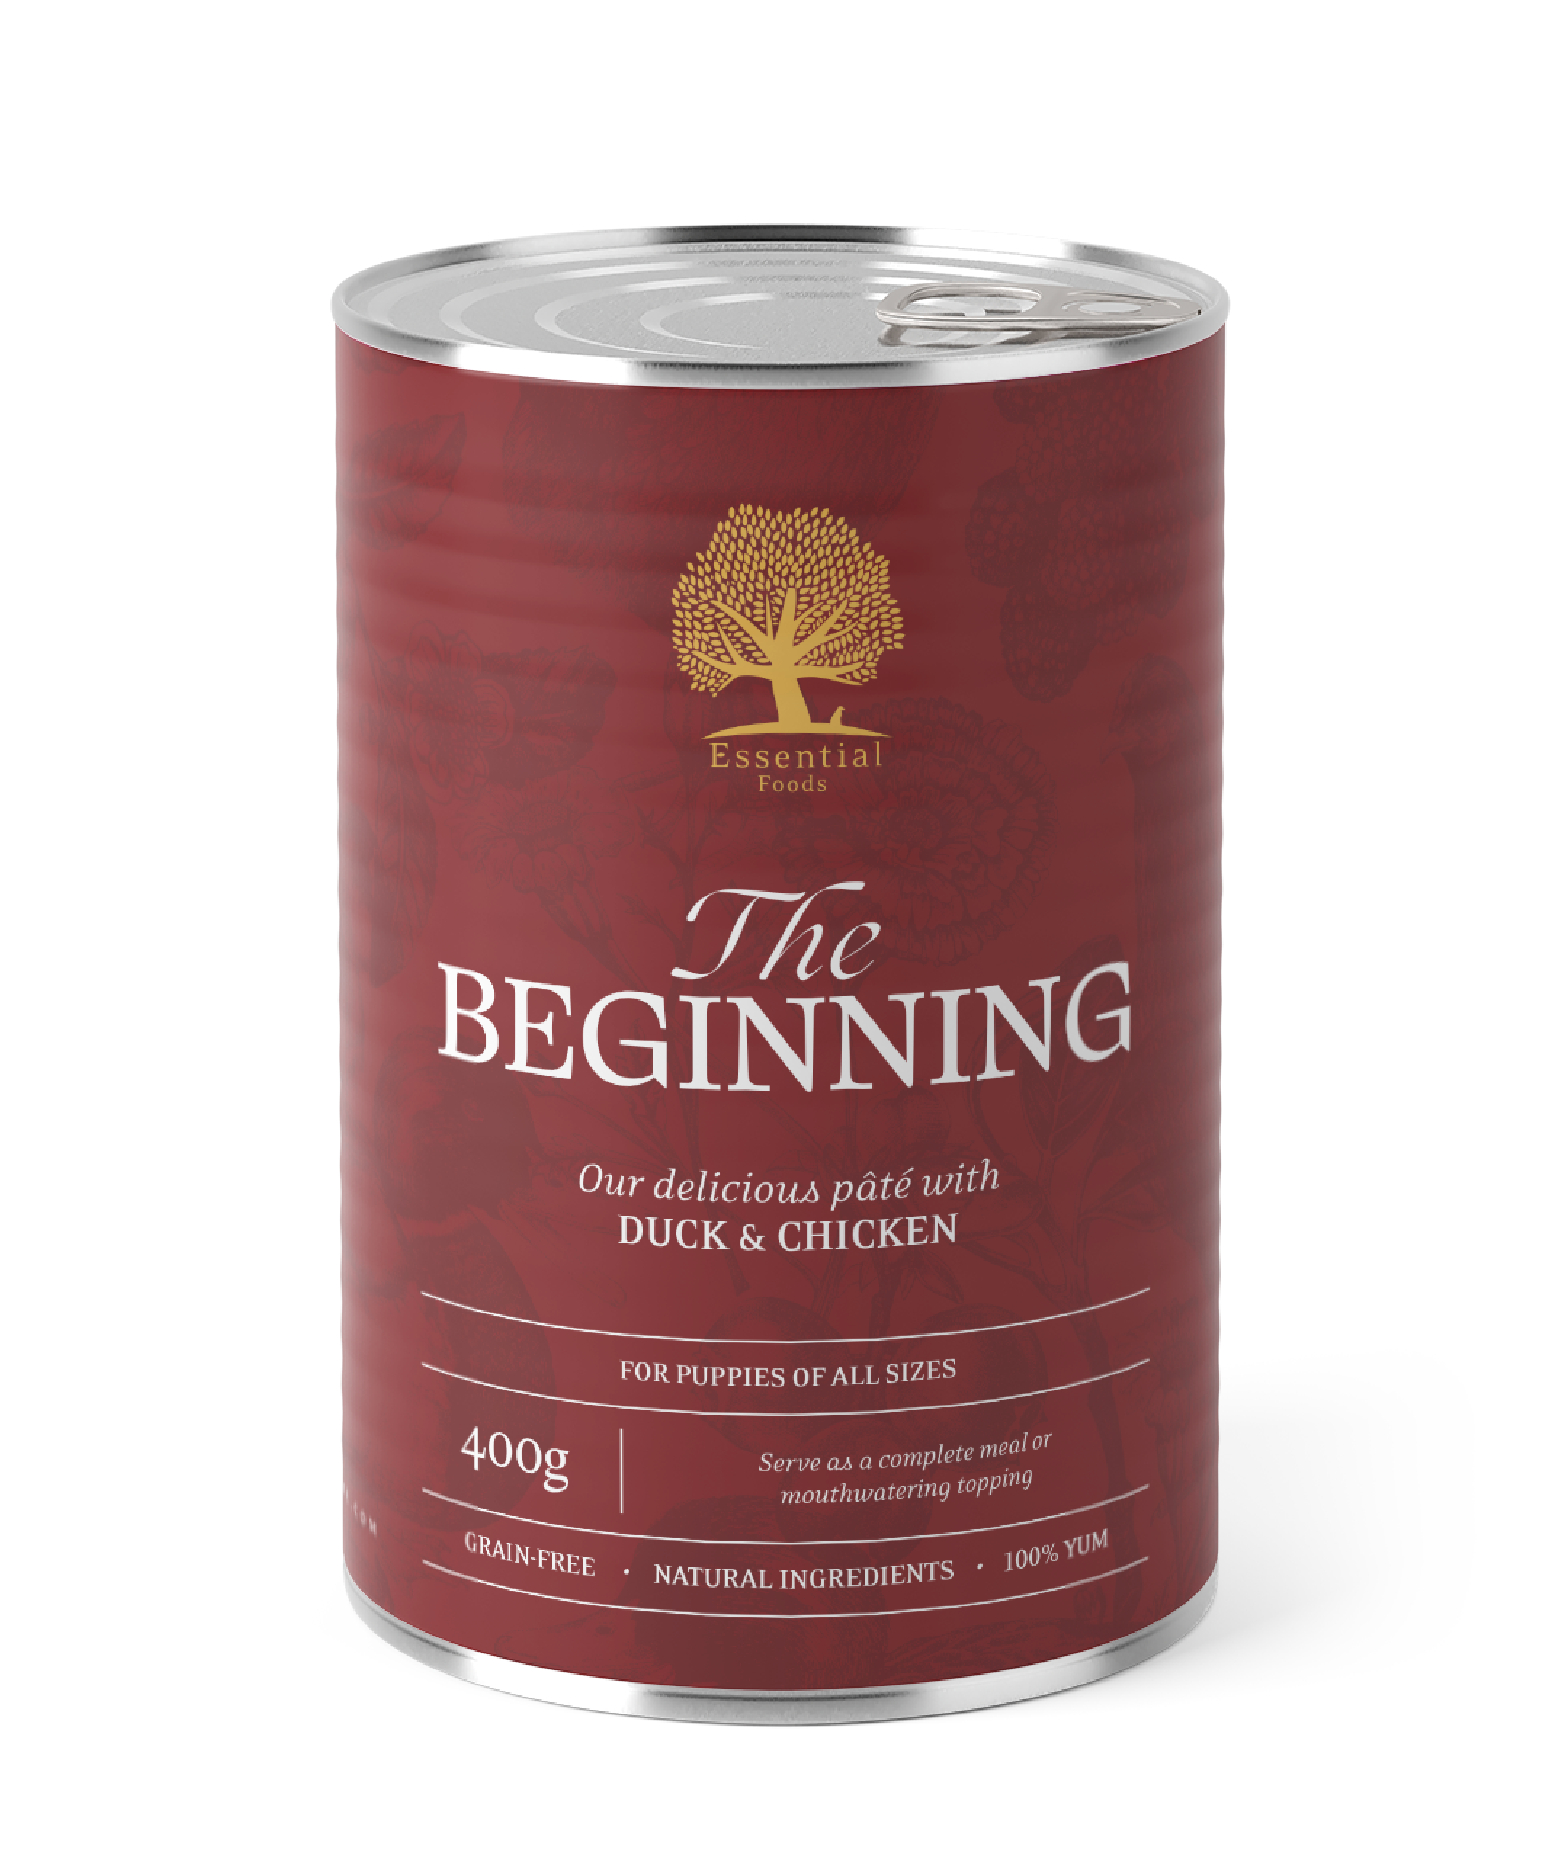 Afbeelding The Beginning Pate – Blikvoeding Essential Foods